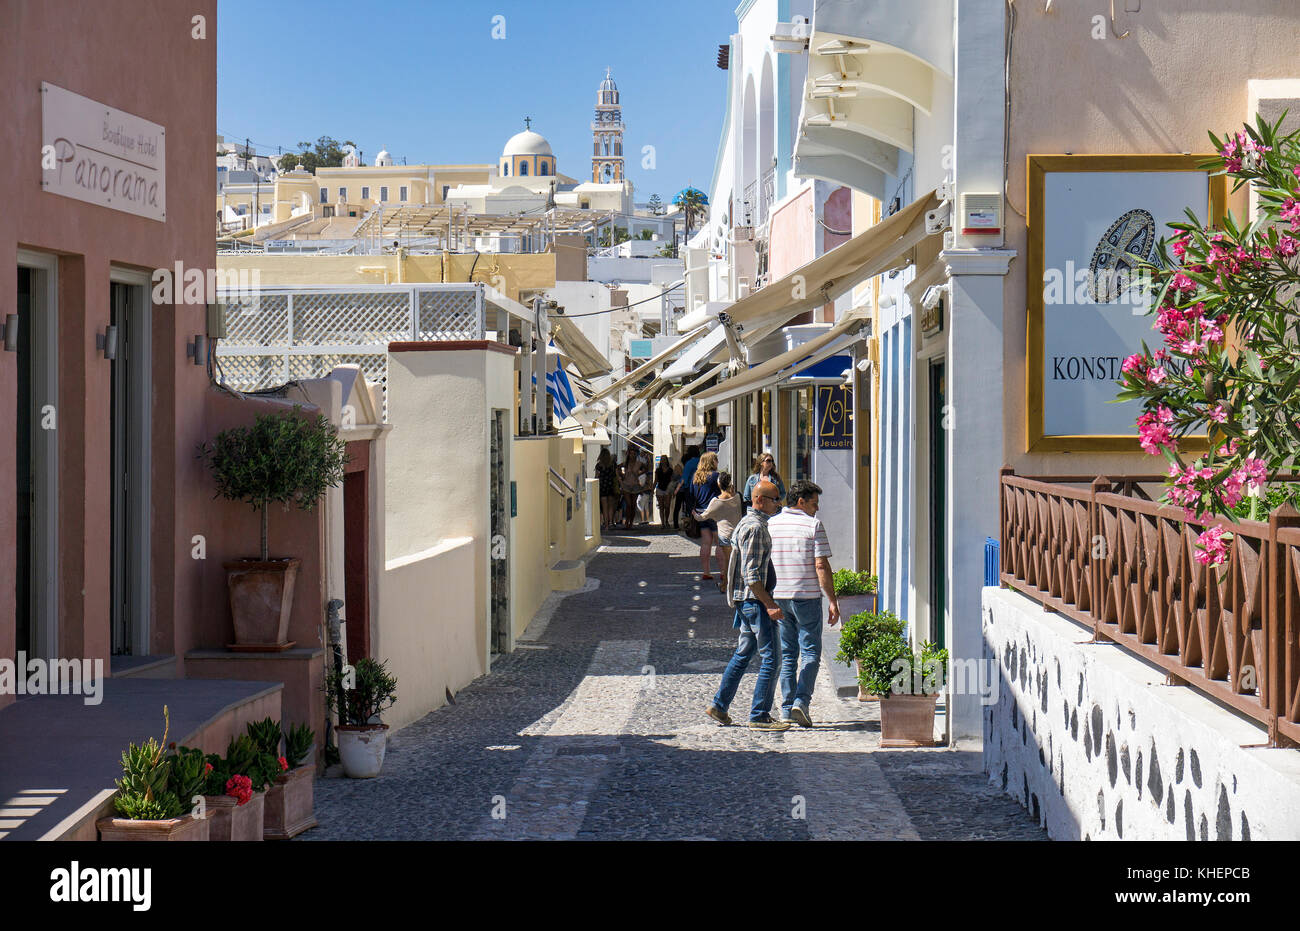 Personnes à la ruelle, des boutiques de souvenirs à Théra, derrière le clocher de l'église catholique, l'île de Santorin, Cyclades, Mer Égée, Grèce Banque D'Images